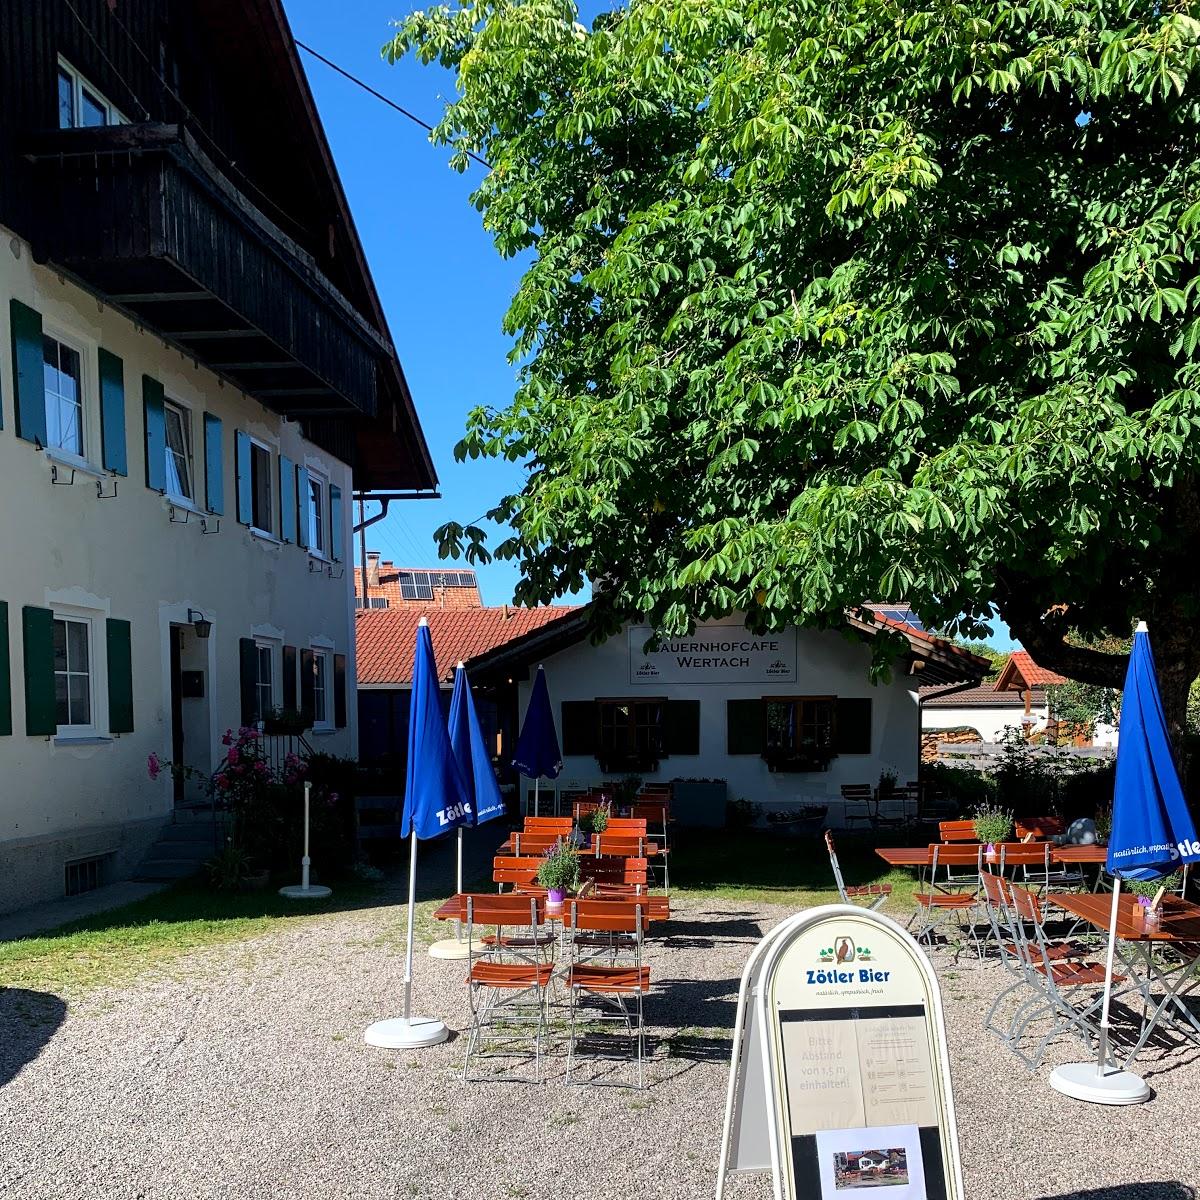 Restaurant "Bauernhofcafe" in  Wertach